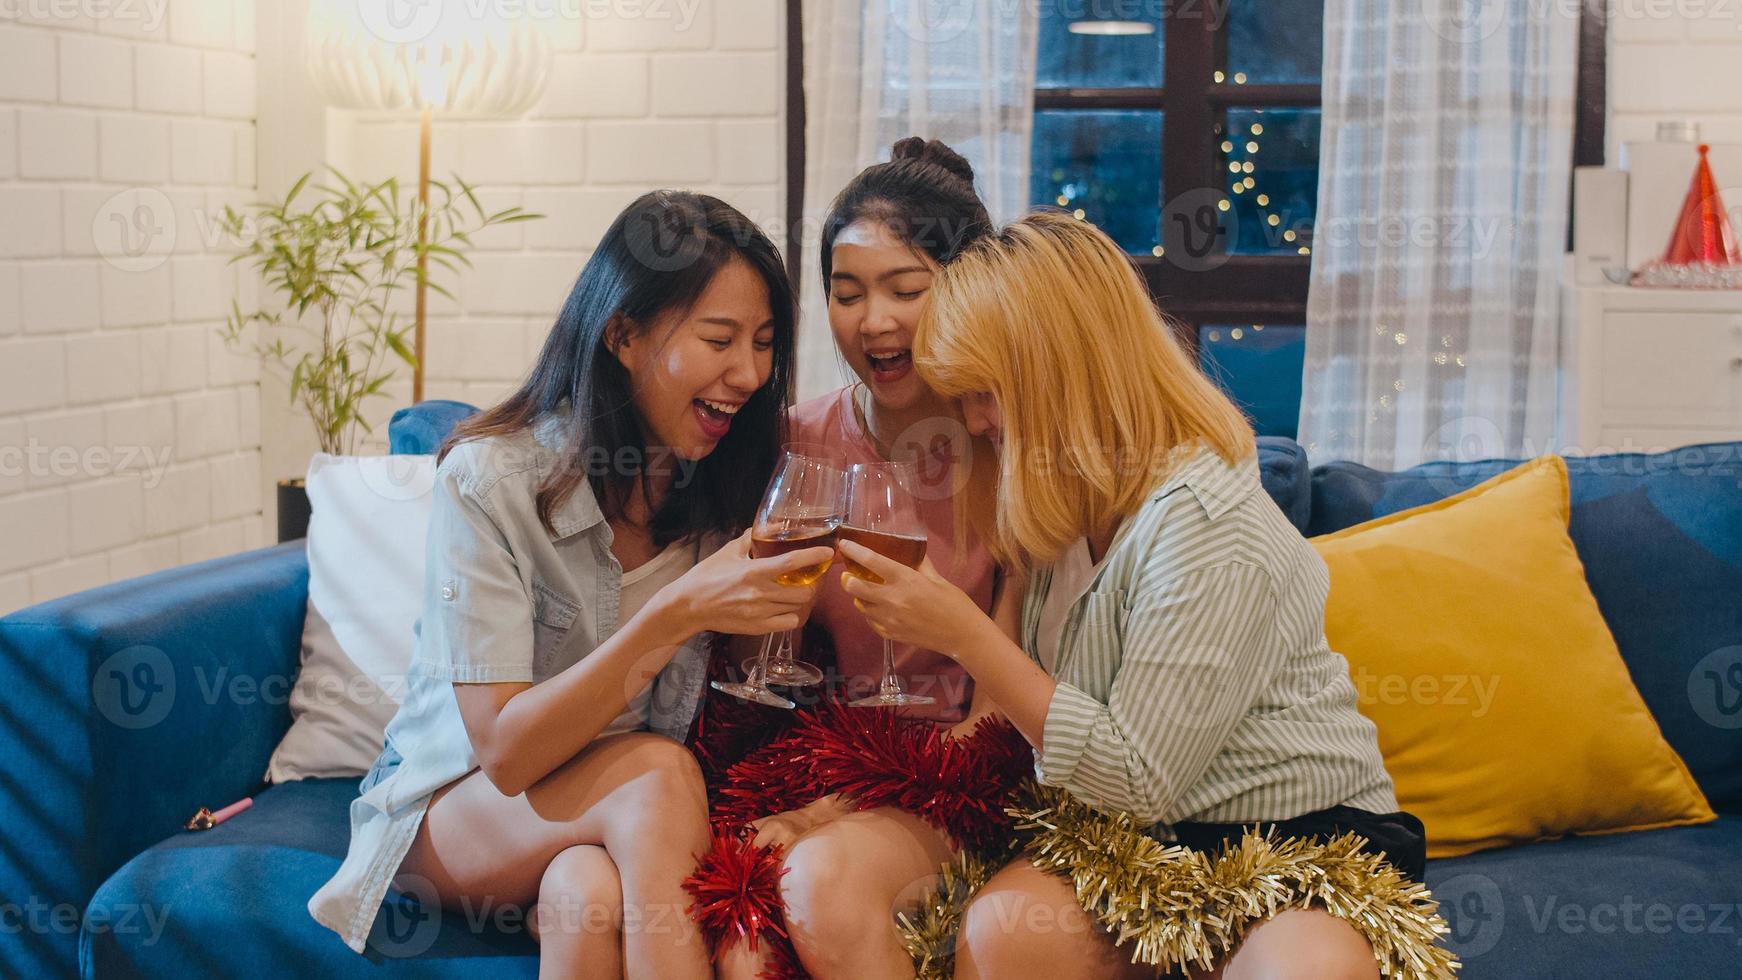 grupp av asiatiska kvinnor festar hemma, kvinnliga dricker cocktail pratar ha roligt tillsammans på soffan i vardagsrummet på natten. tonåring ung vän spela spel, vänskap, fira semester koncept. foto